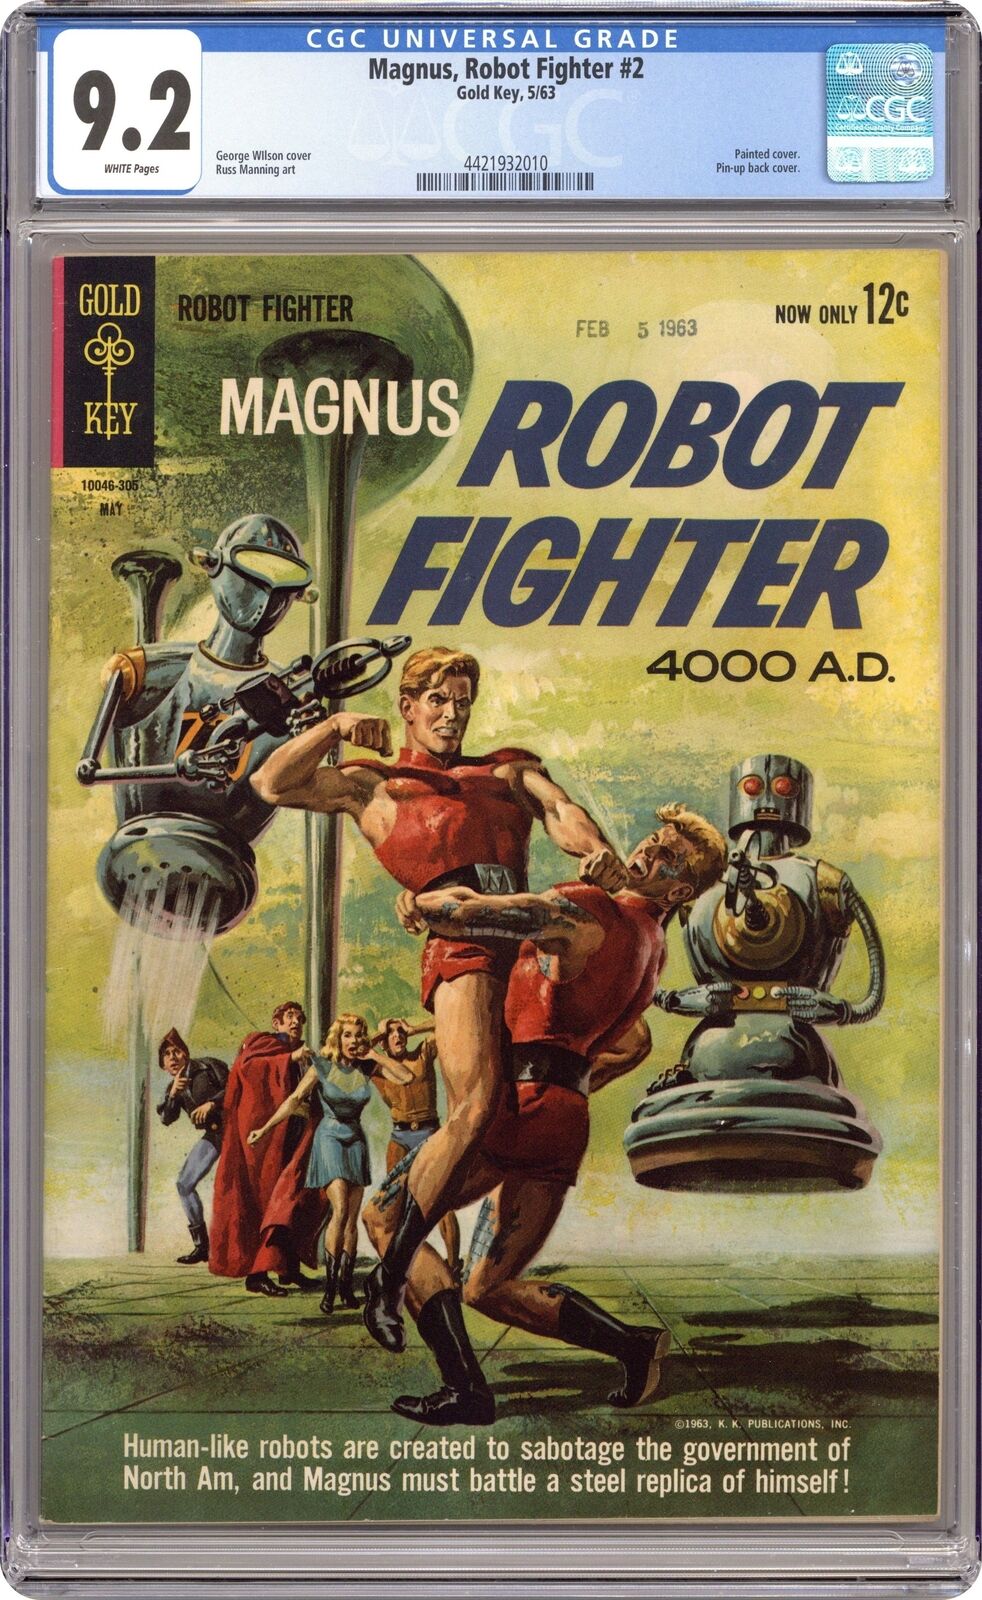 Magnus Robot Fighter #2 CGC 9.2 1963 4421932010